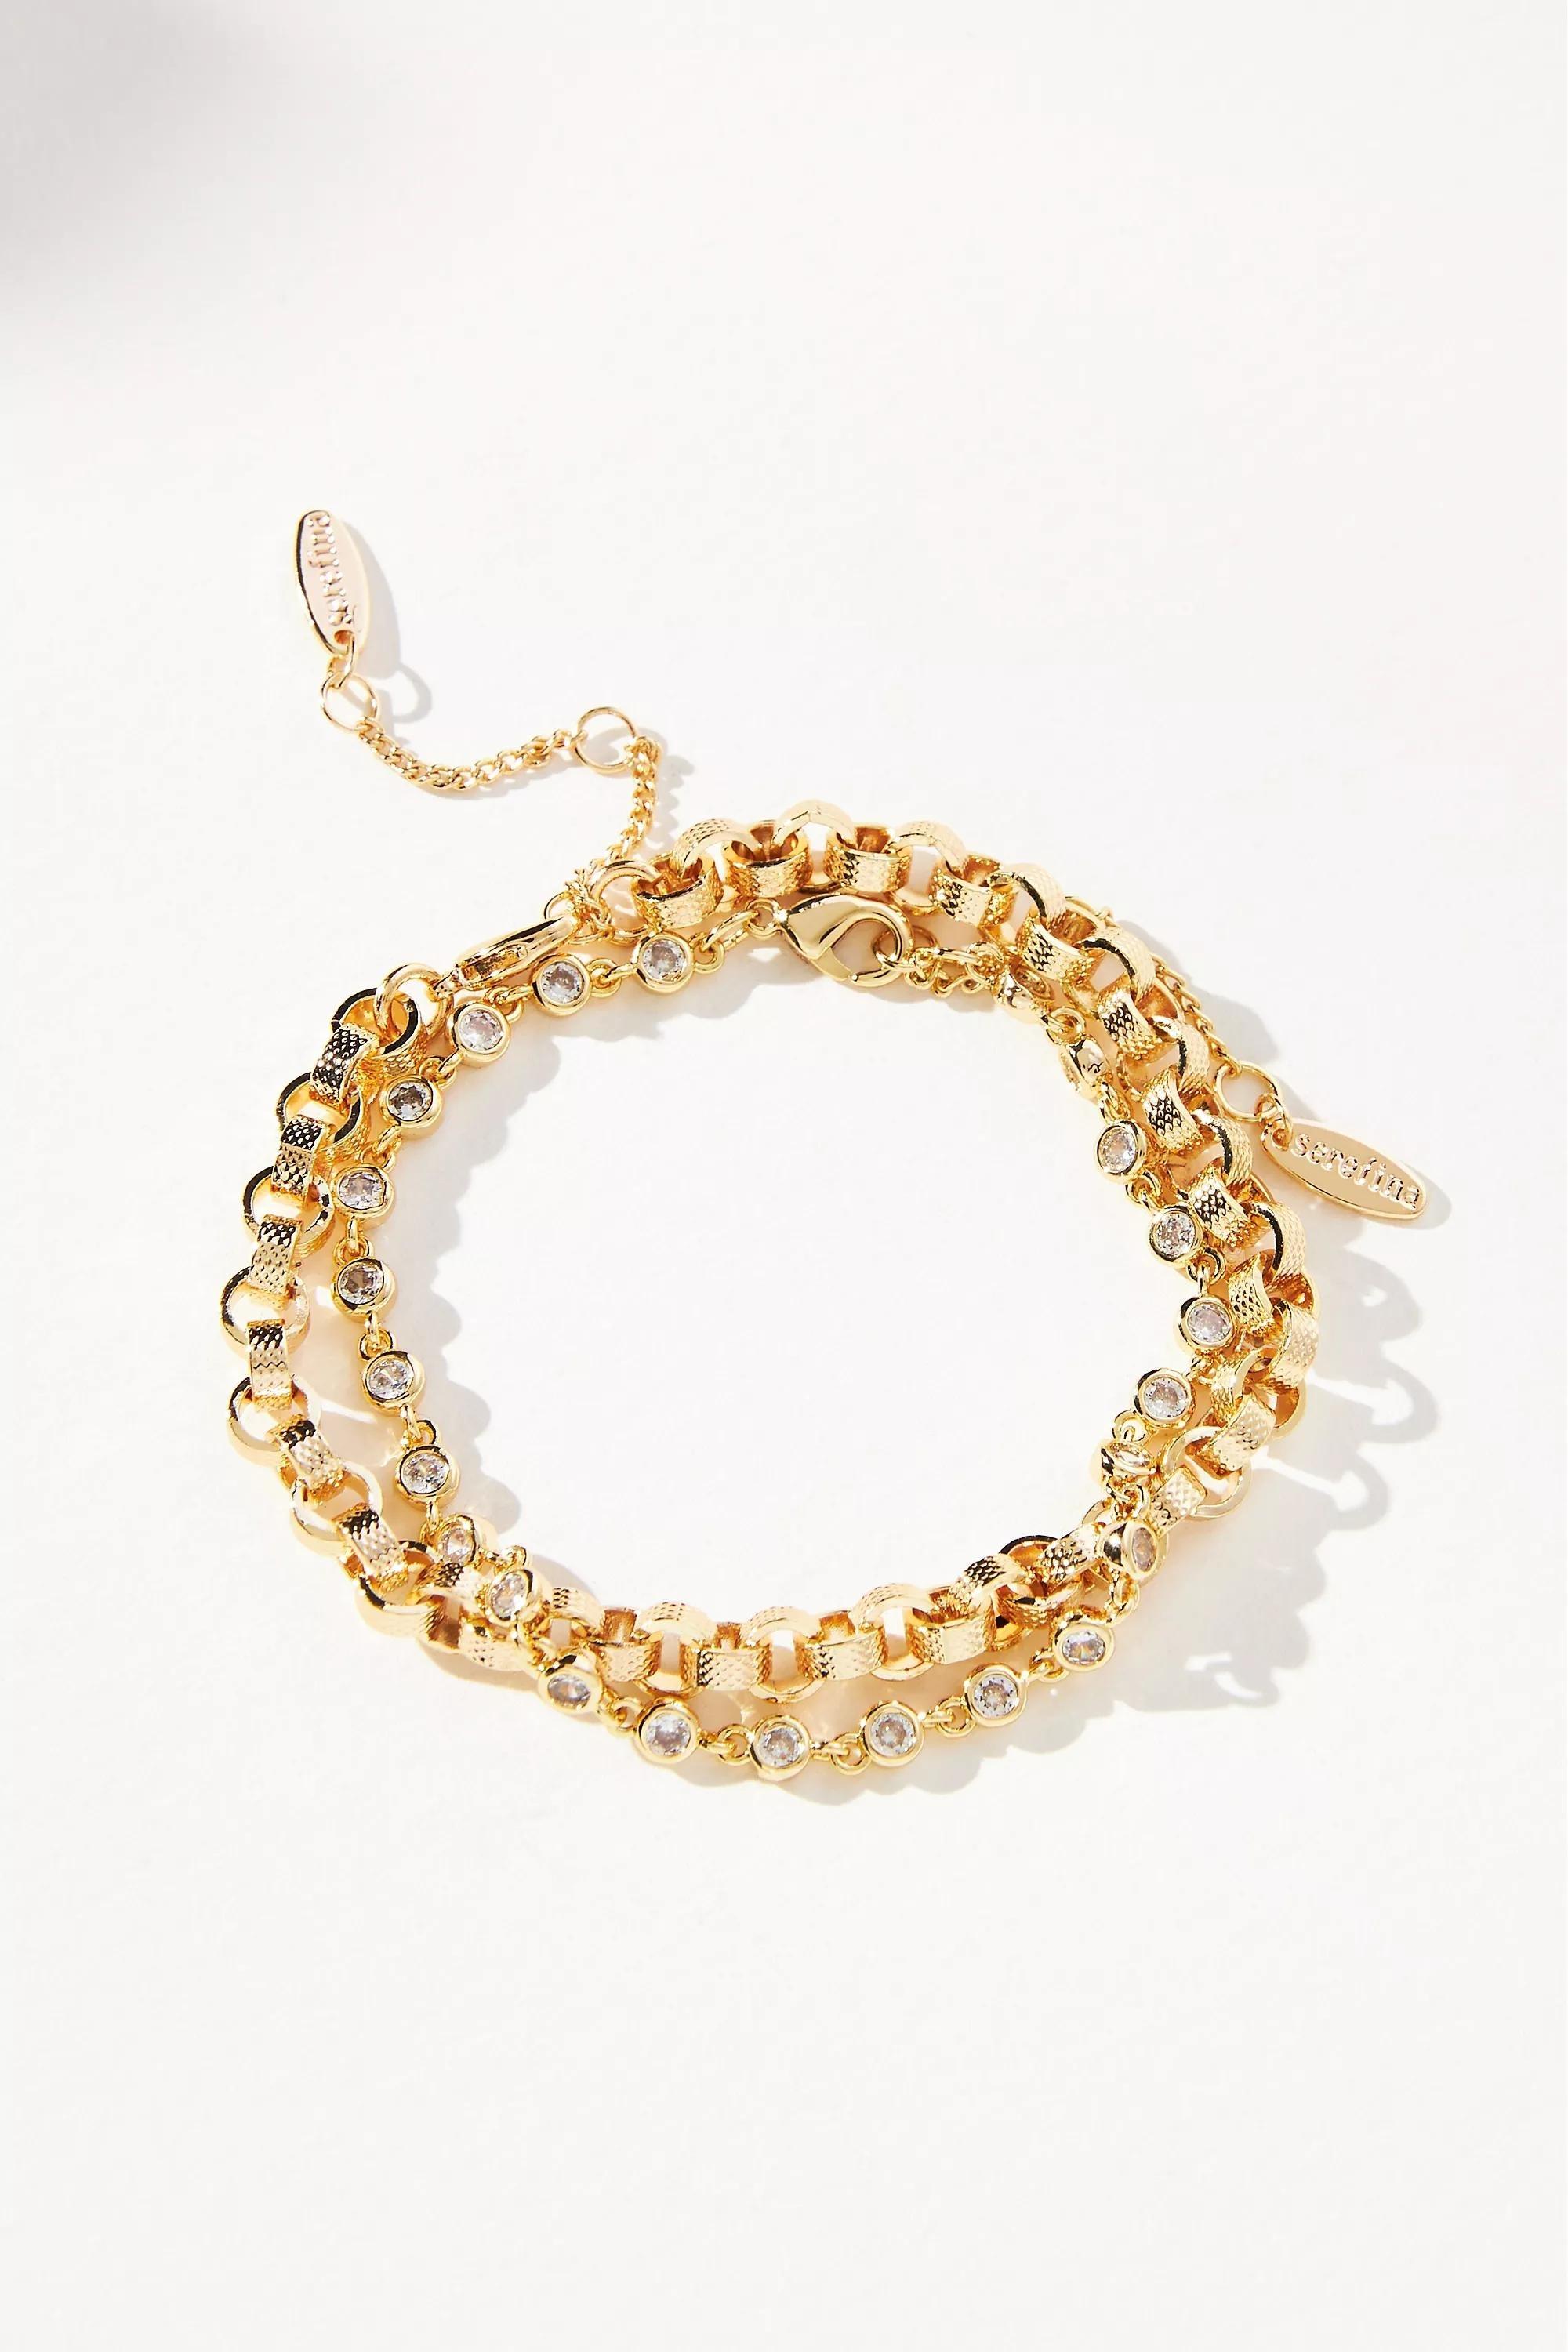 Anthropologie - Delicate Crystal Bracelets, Set Of 2, Gold